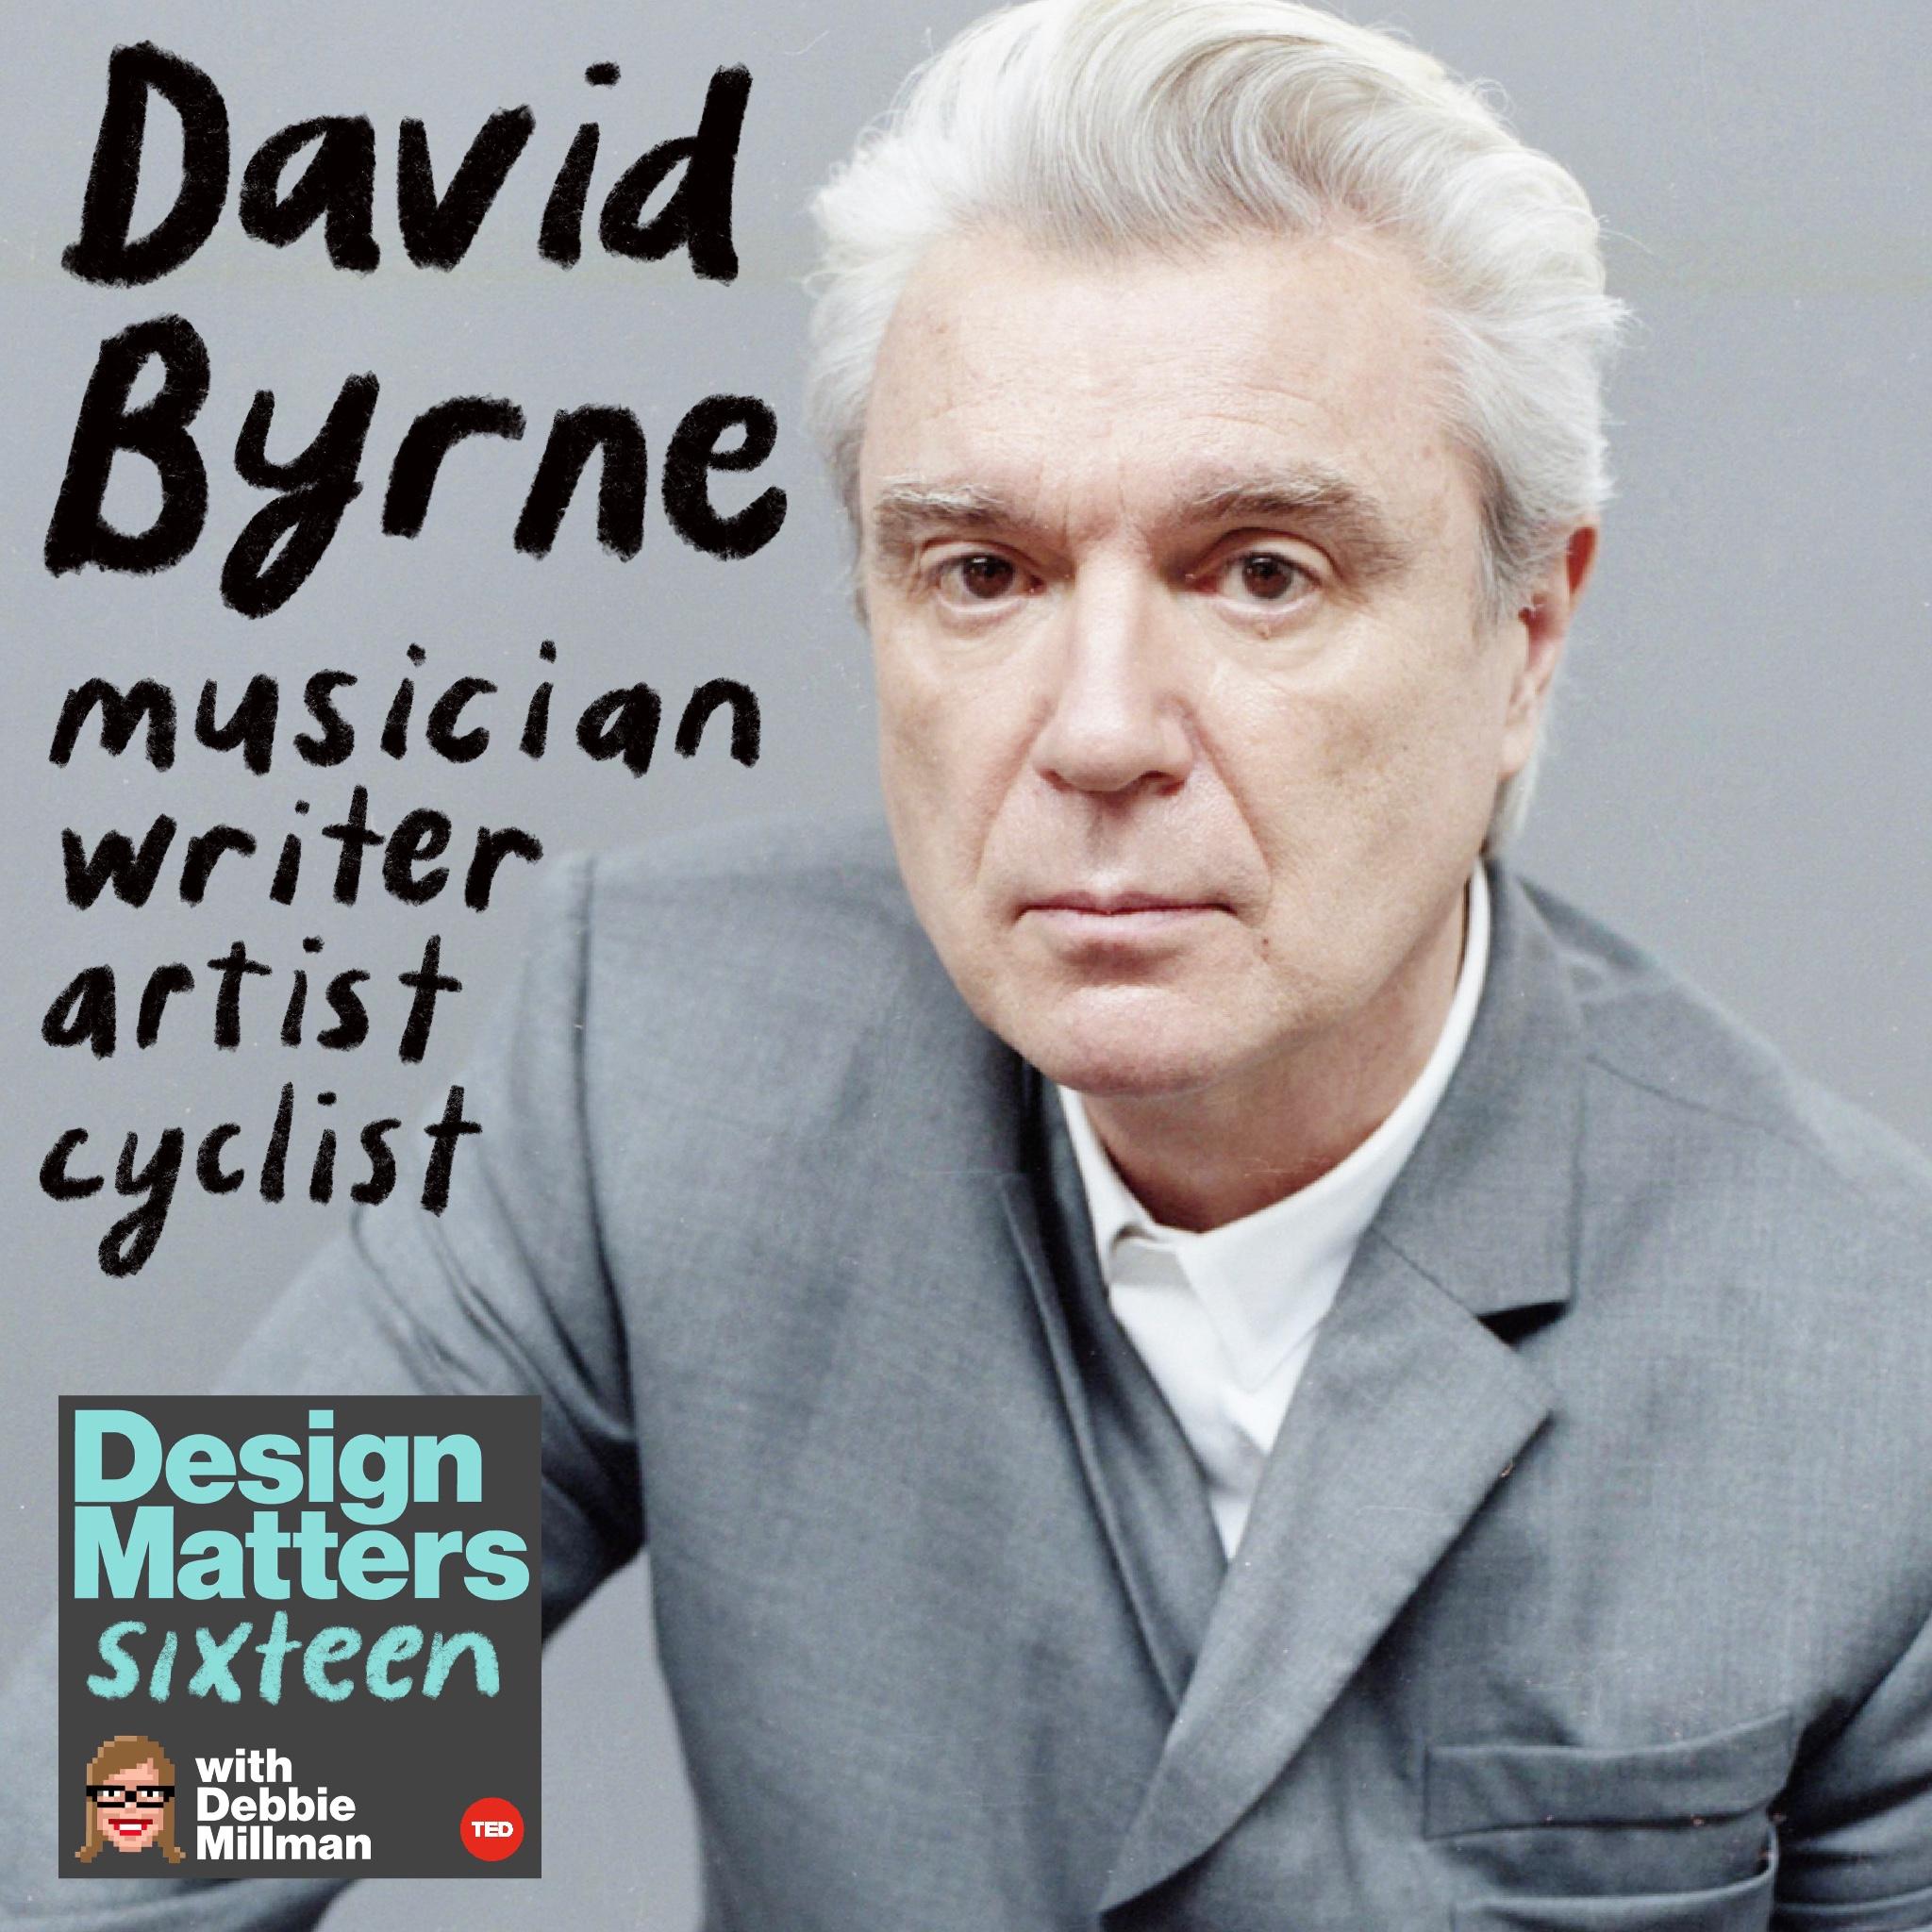 Thumbnail for "David Byrne".